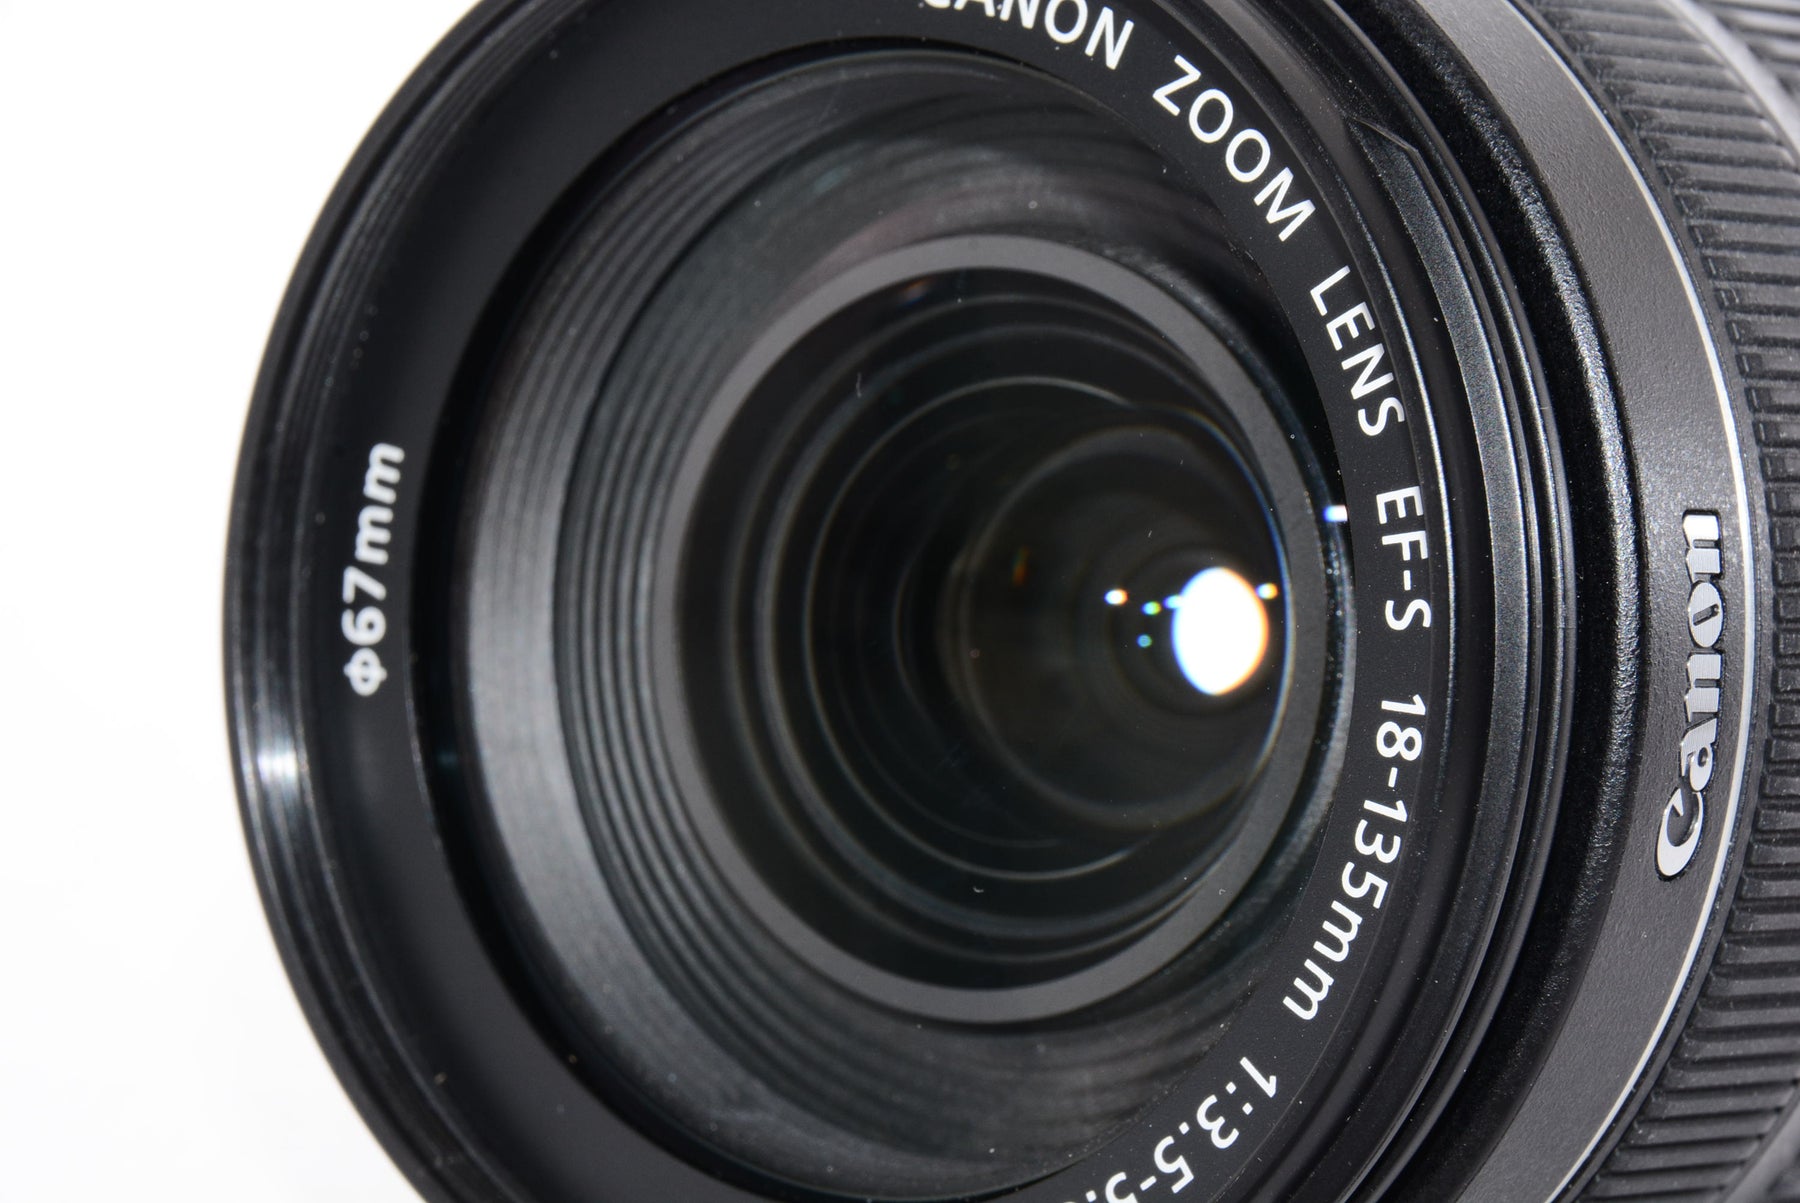 【外観特上級】Canon 標準ズームレンズ EF-S18-135mm F3.5-5.6 IS STM